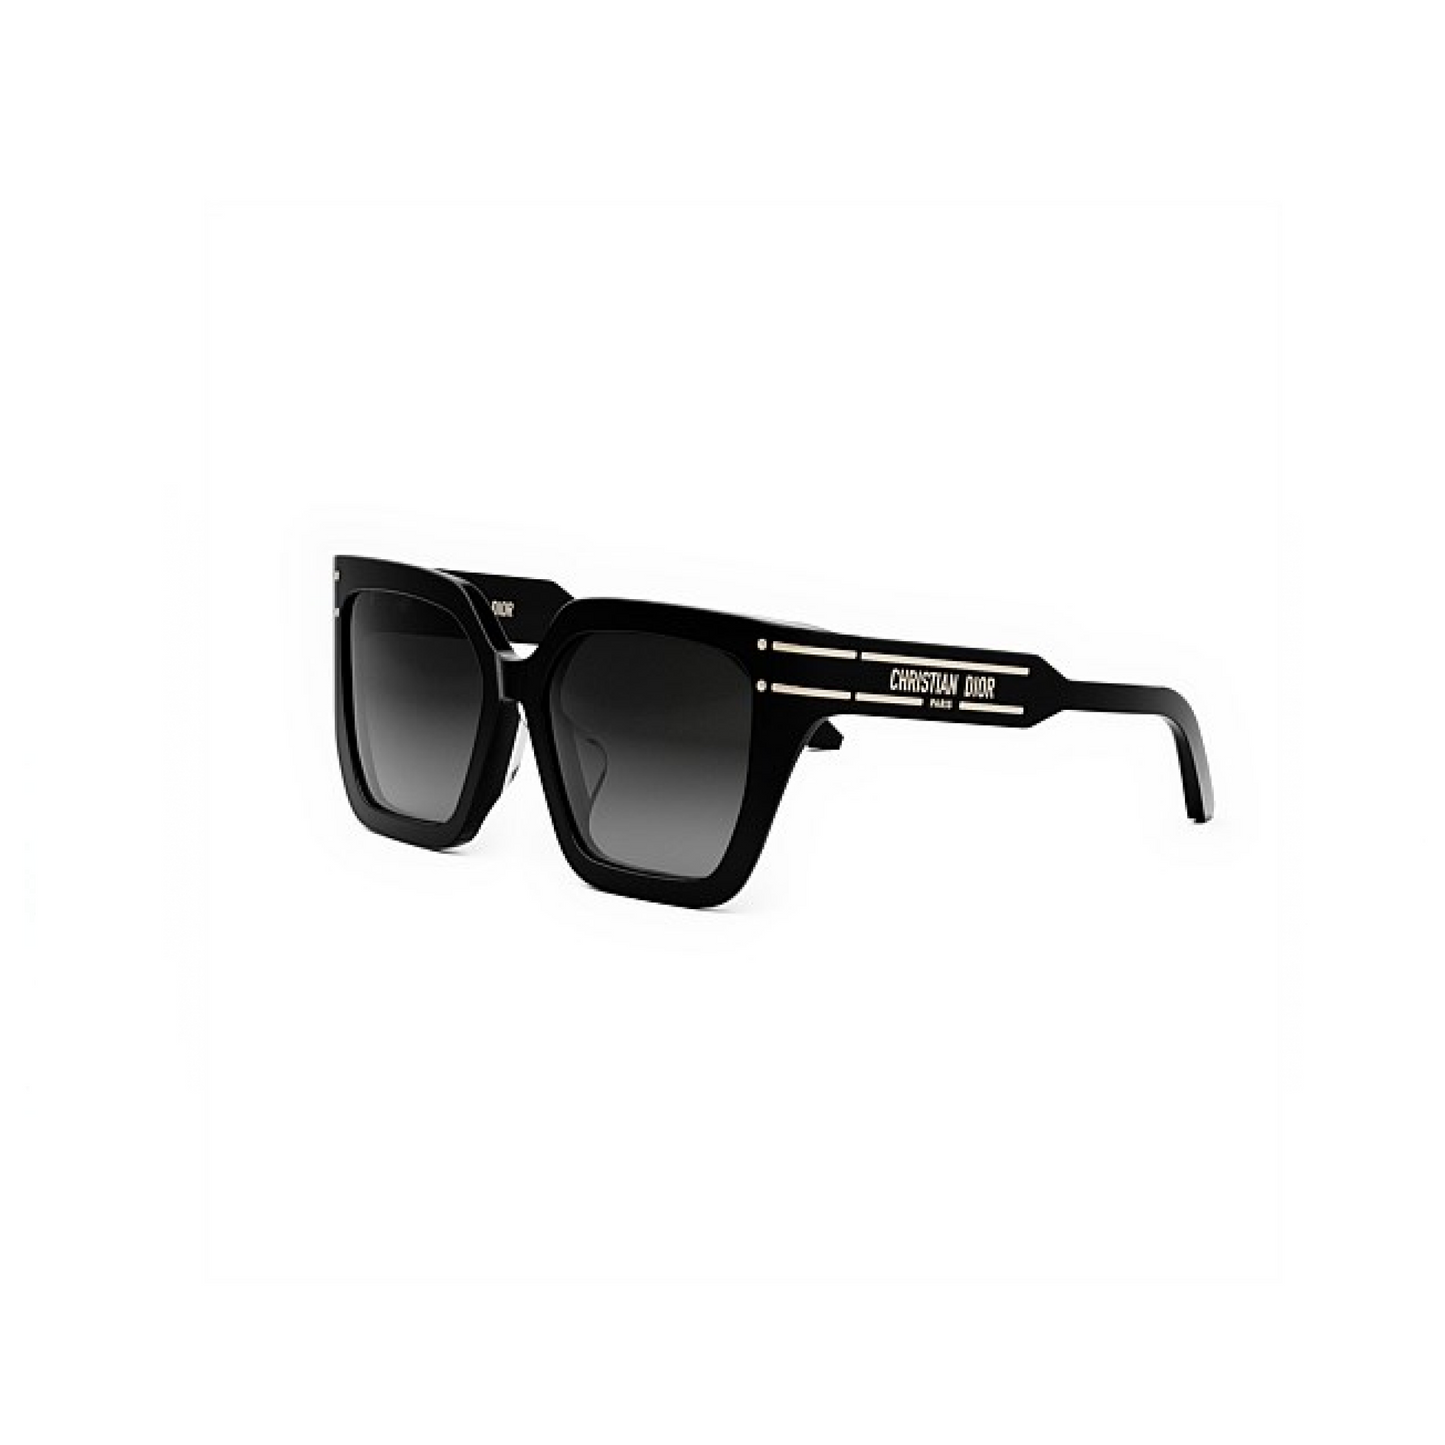 DiorSignature S10F 10A155 Sunglasses in Brown/Pink